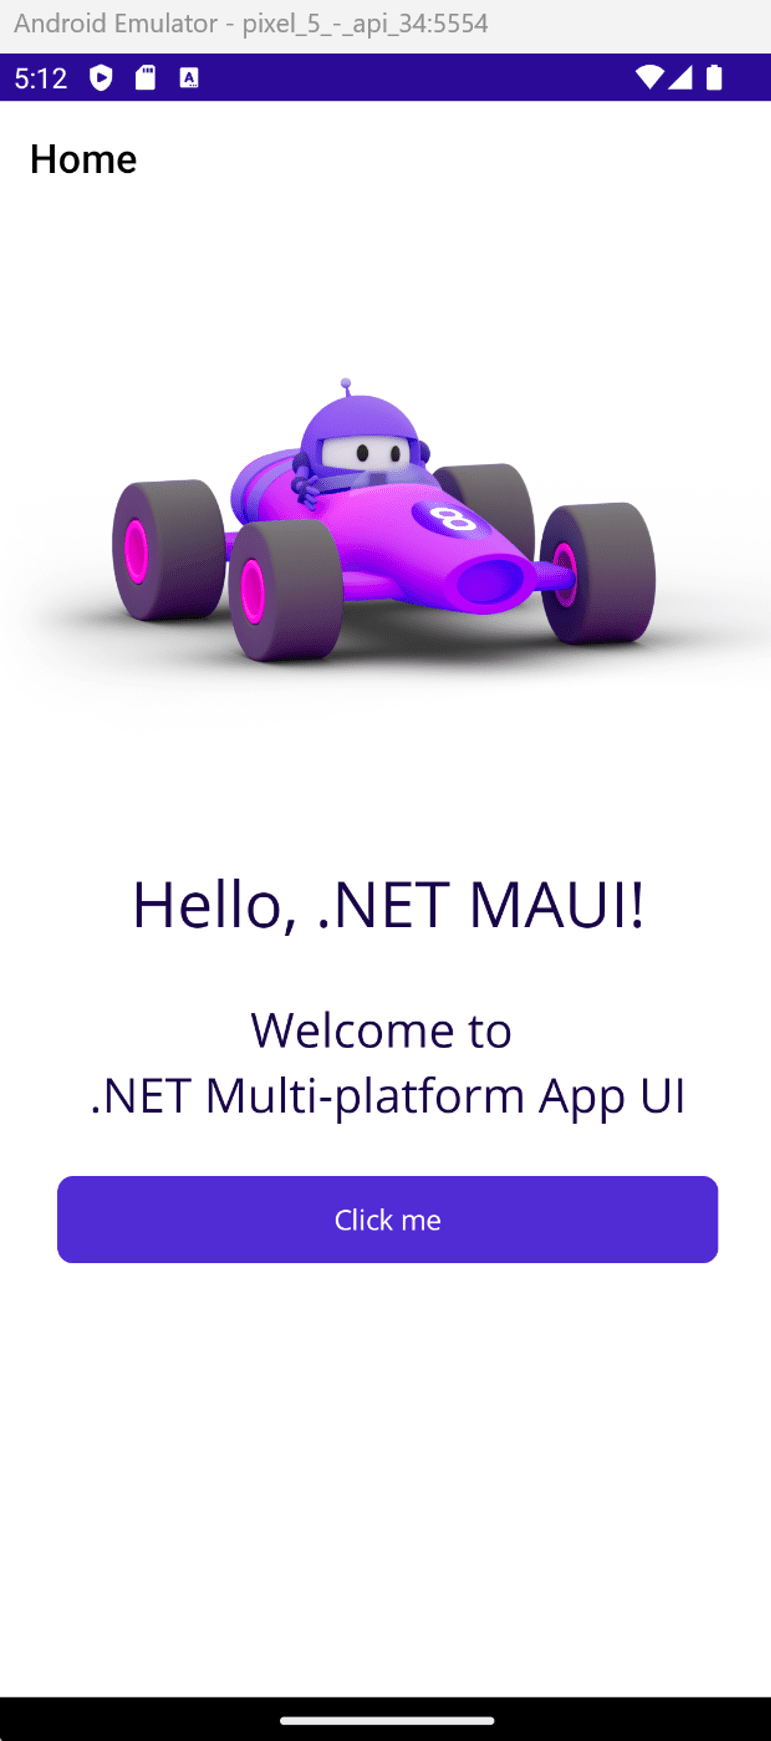 Emulador de Android que ejecuta la aplicación .NET MAUI. Se muestra el mensaje “Hola mundo”.